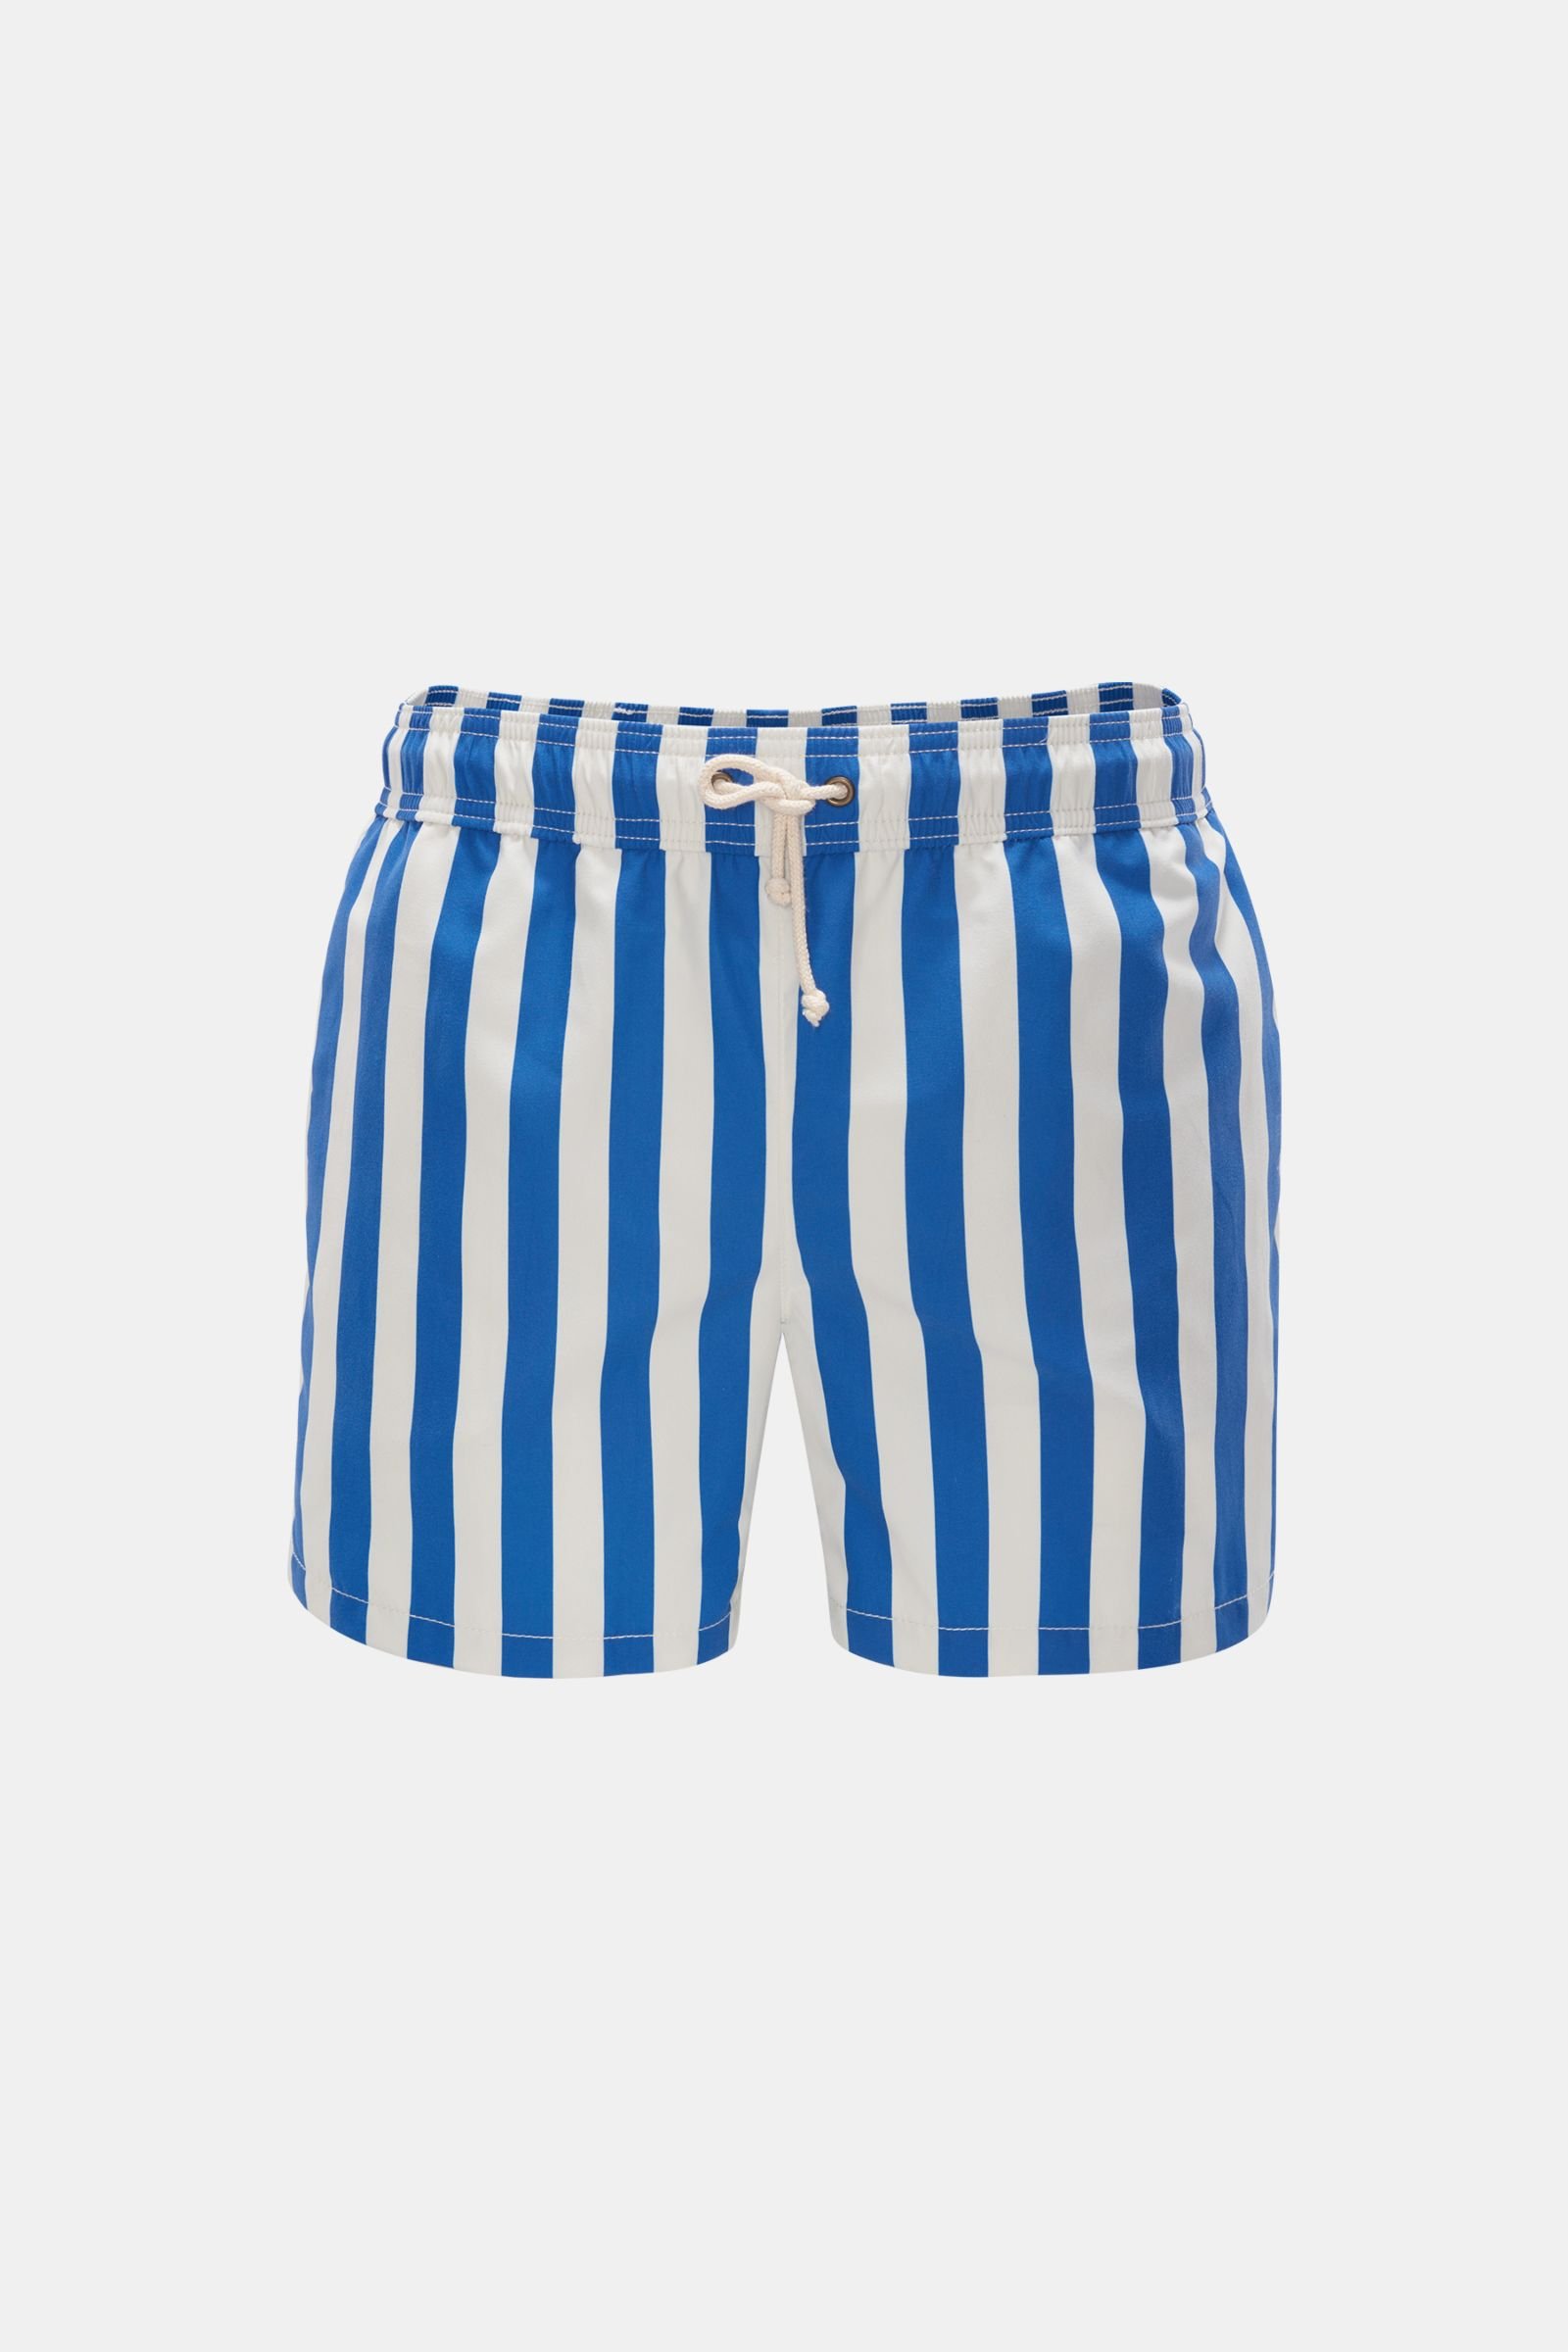 Swim shorts 'Paraggi' dark blue/white striped